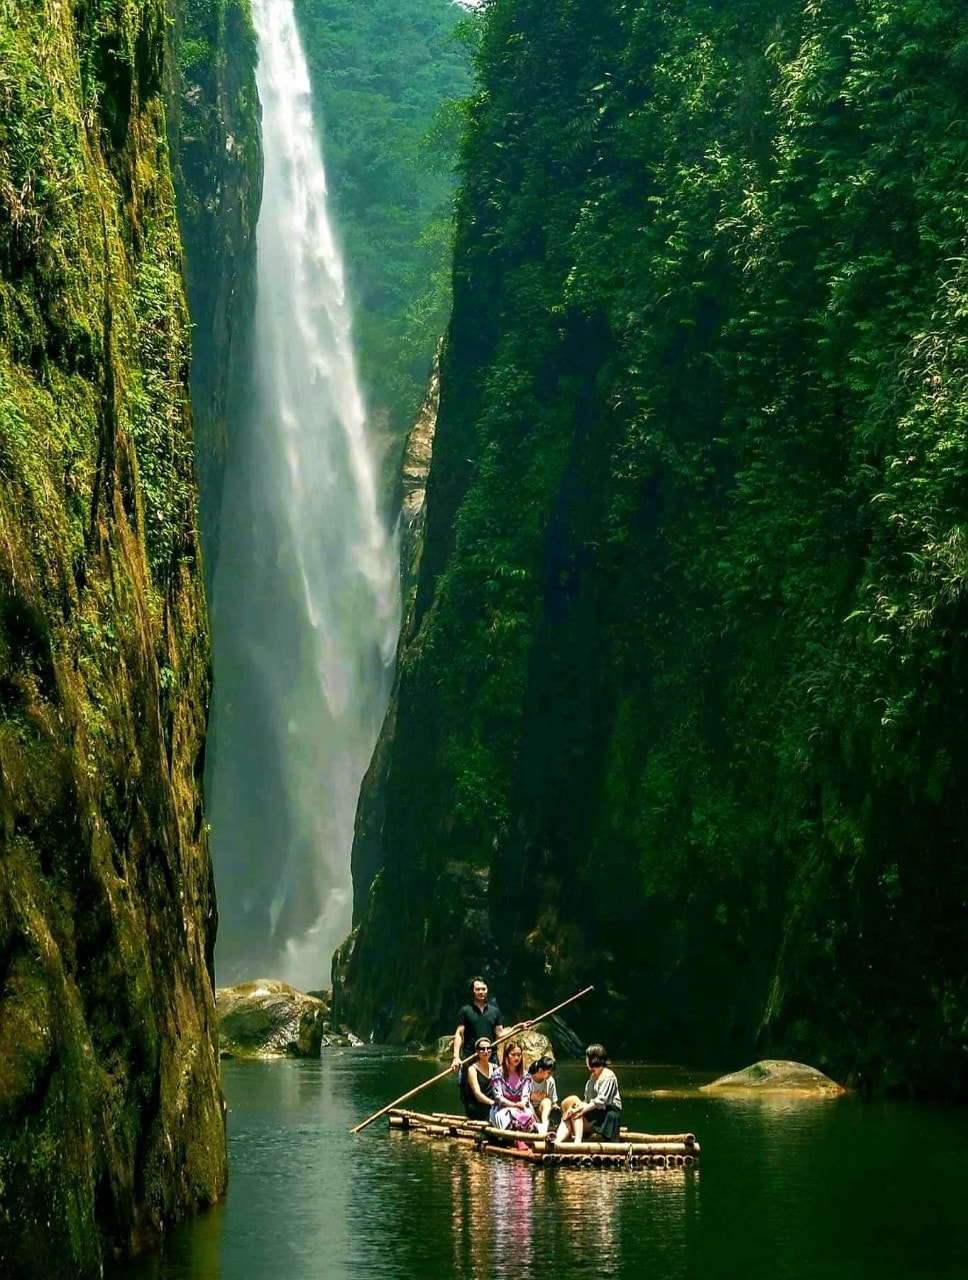 Địa điểm đẹp như trong phim kiếm hiệp, được gọi với biệt danh viên ngọc thô ẩn mình trong núi: Thực chất ở ngay miền Bắc Việt Nam - Ảnh 1.